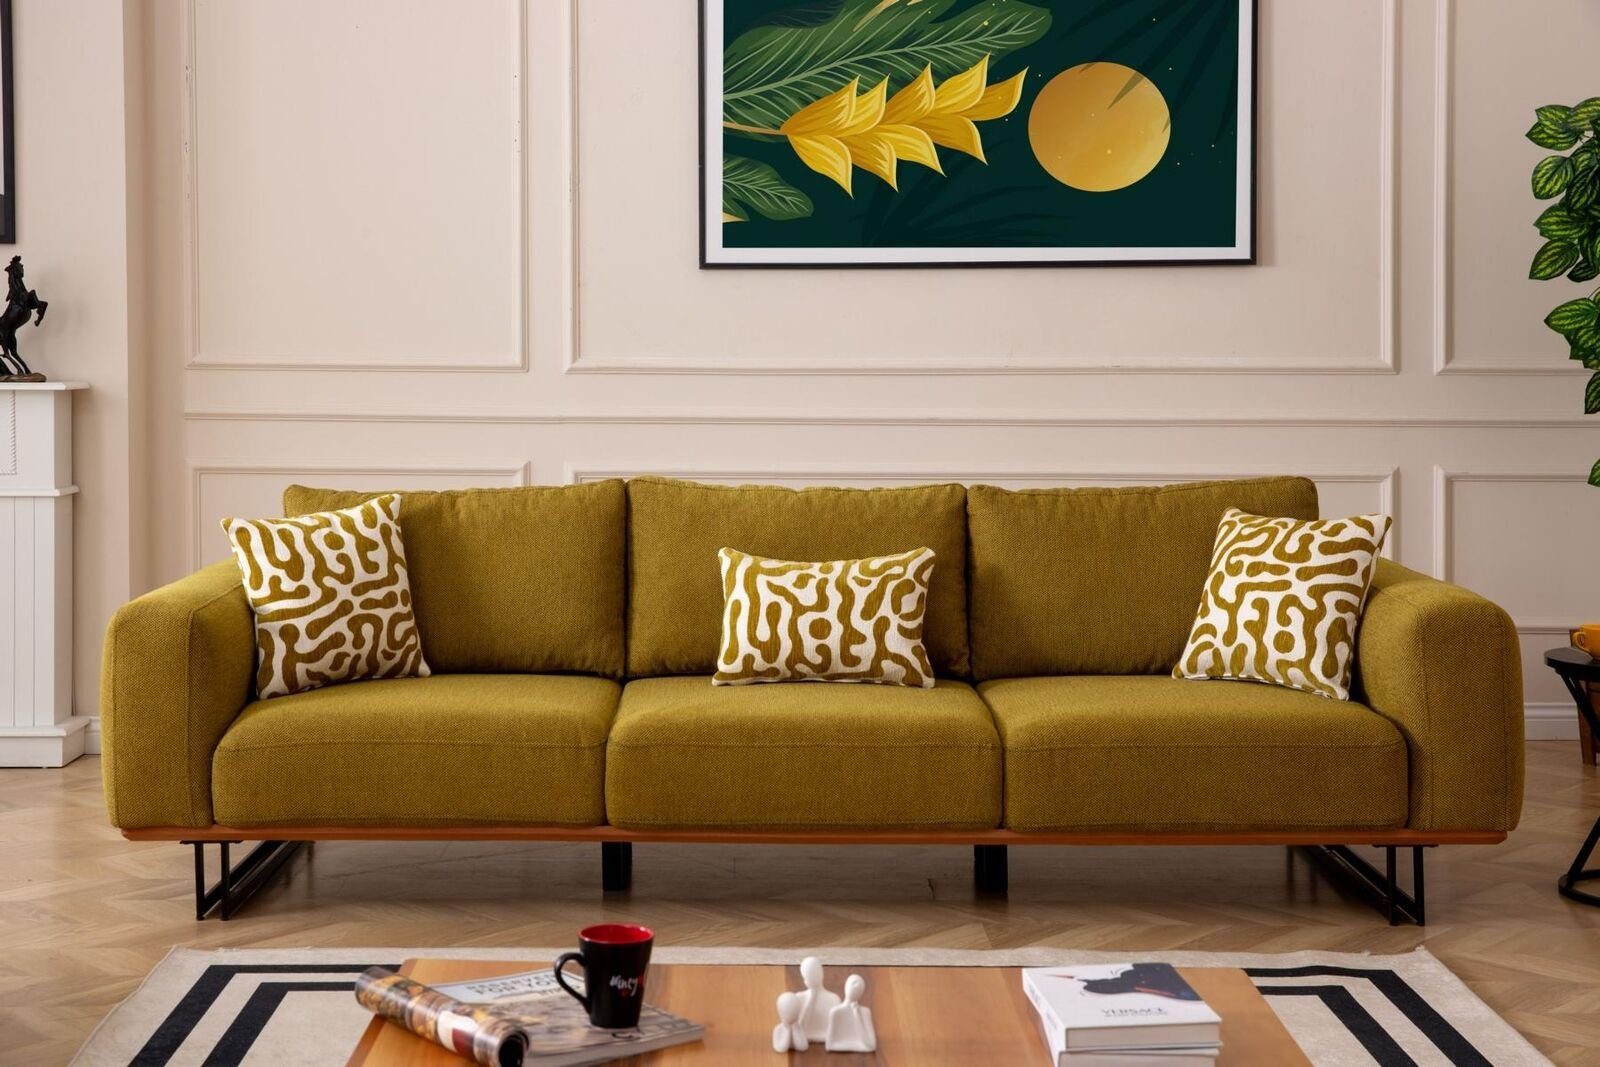 JVmoebel 4-Sitzer Italienische Sofa Couch Polster 4 Sitzer Möbel 270cmTextil Couchen Neu, 1 Teile, Made in Europa